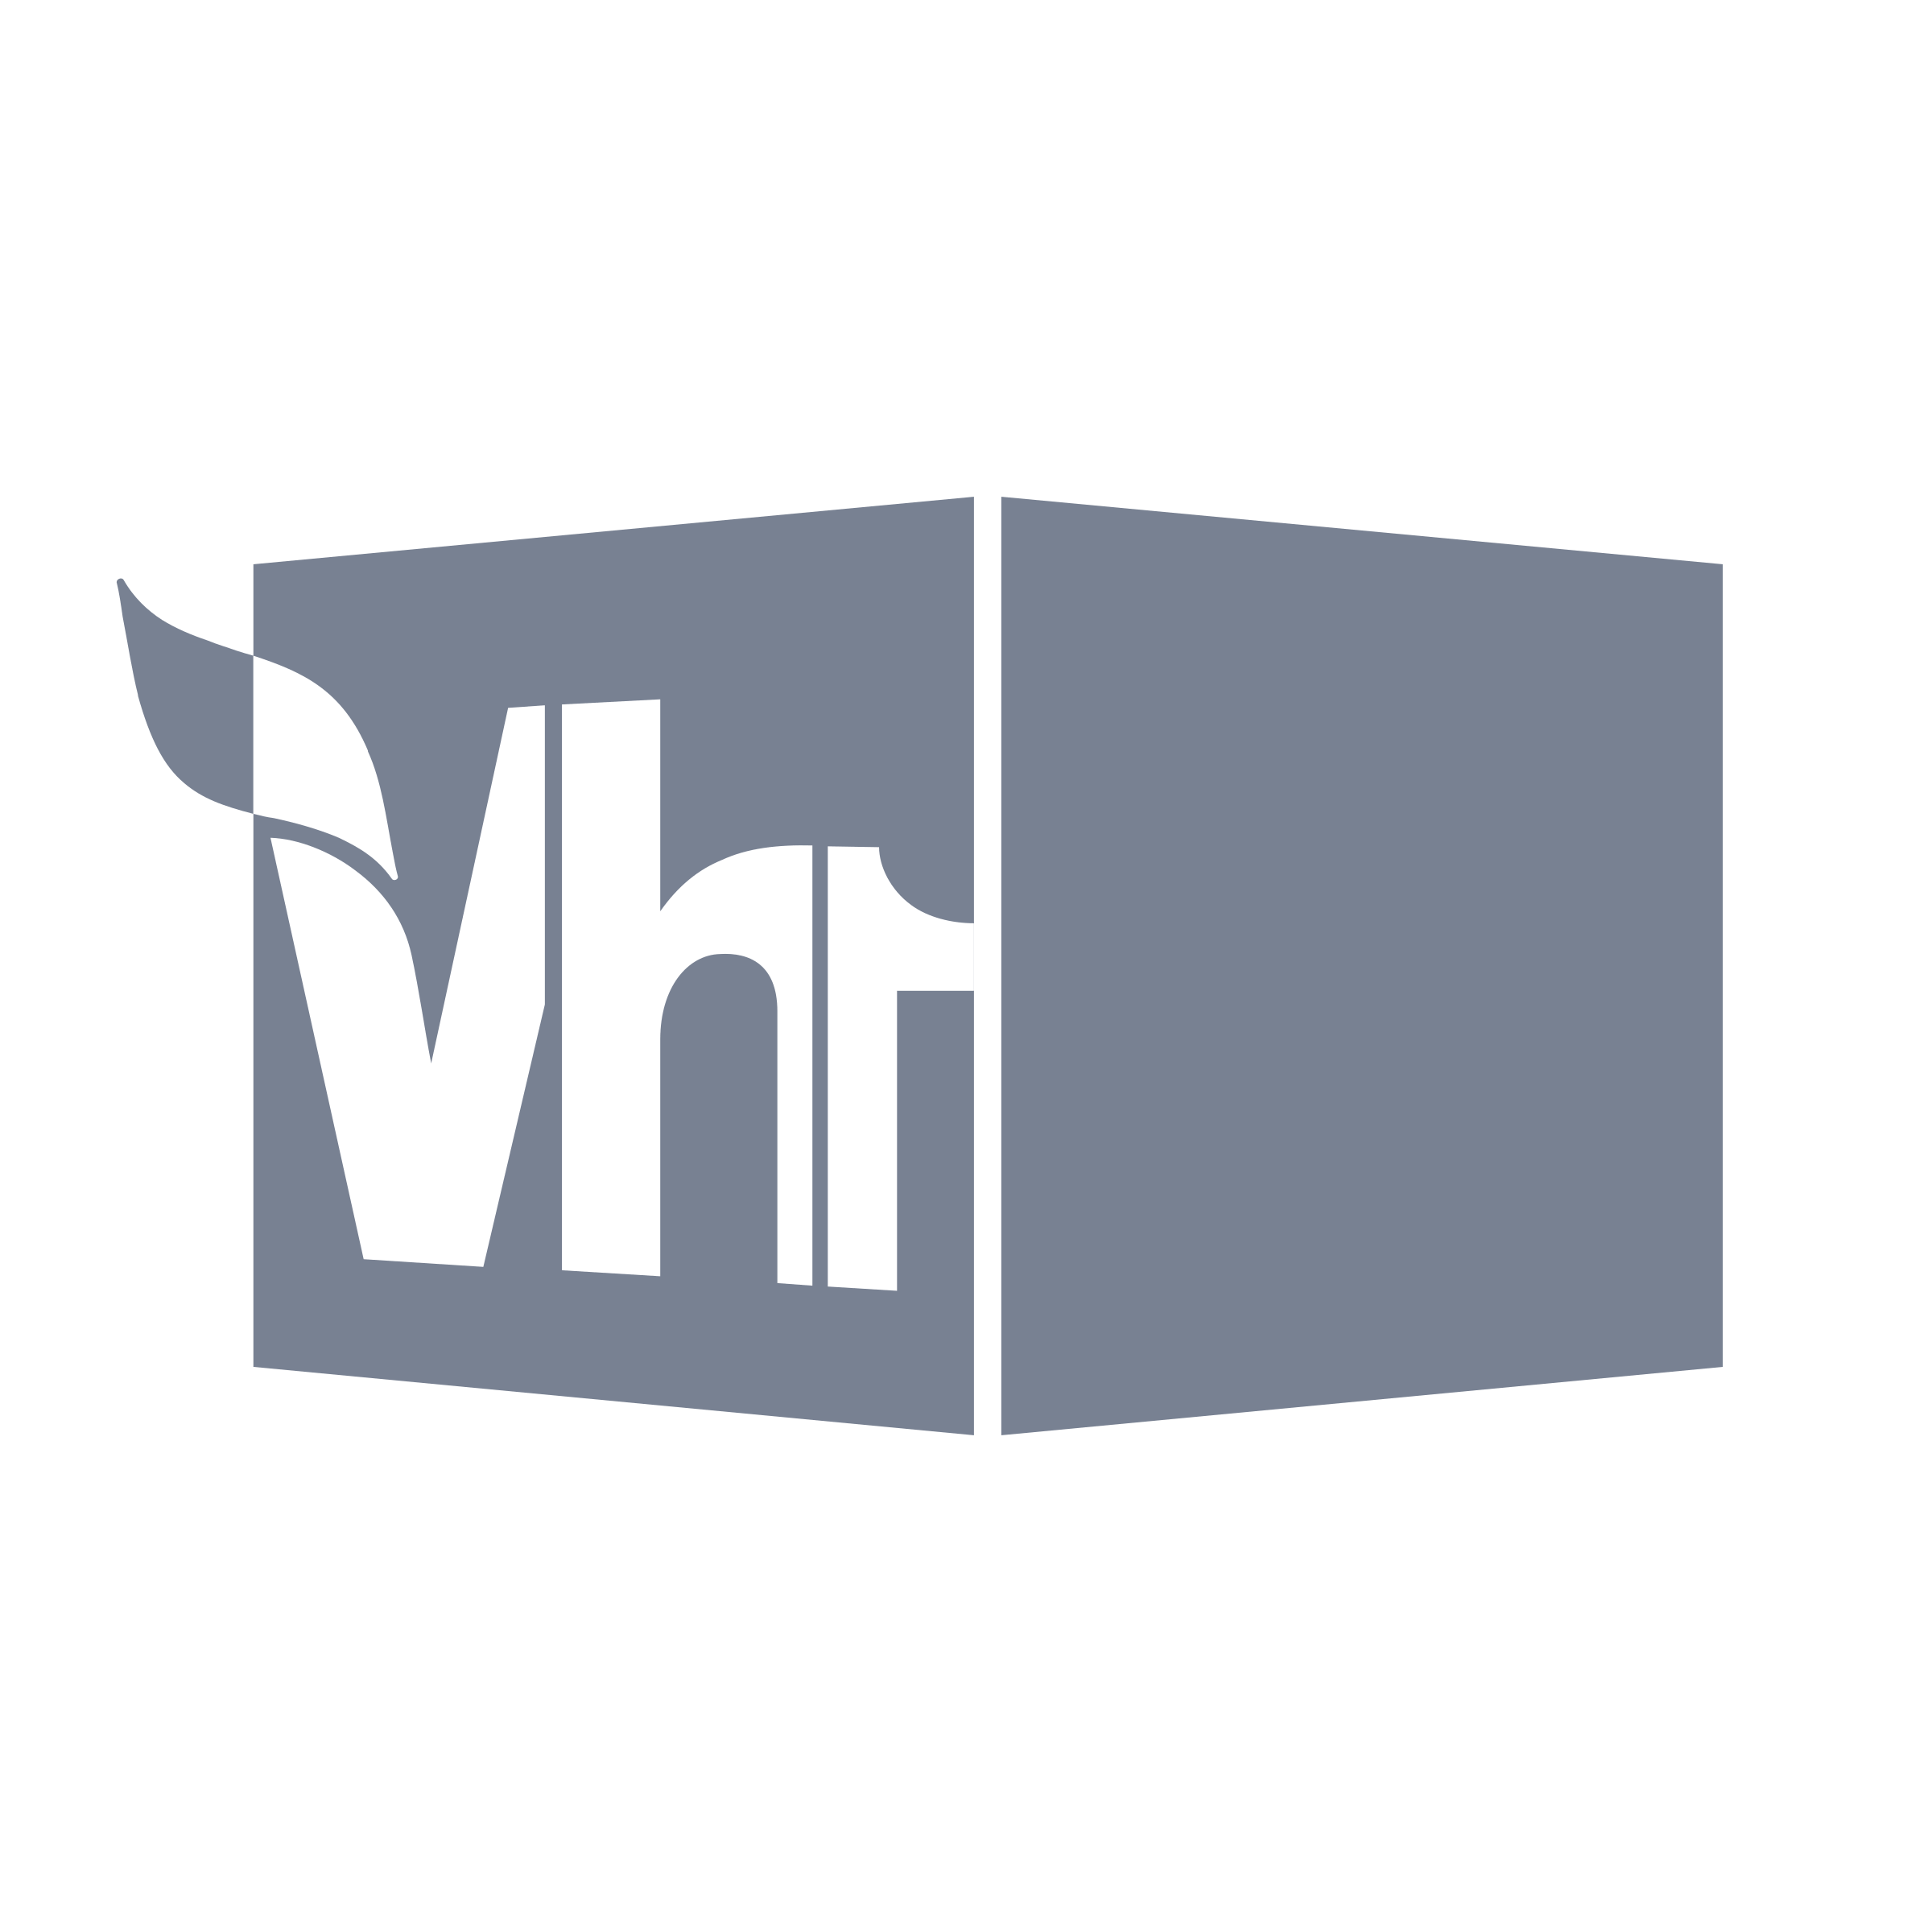 VH1 Logo - VH1 Logo PNG Transparent & SVG Vector - Freebie Supply